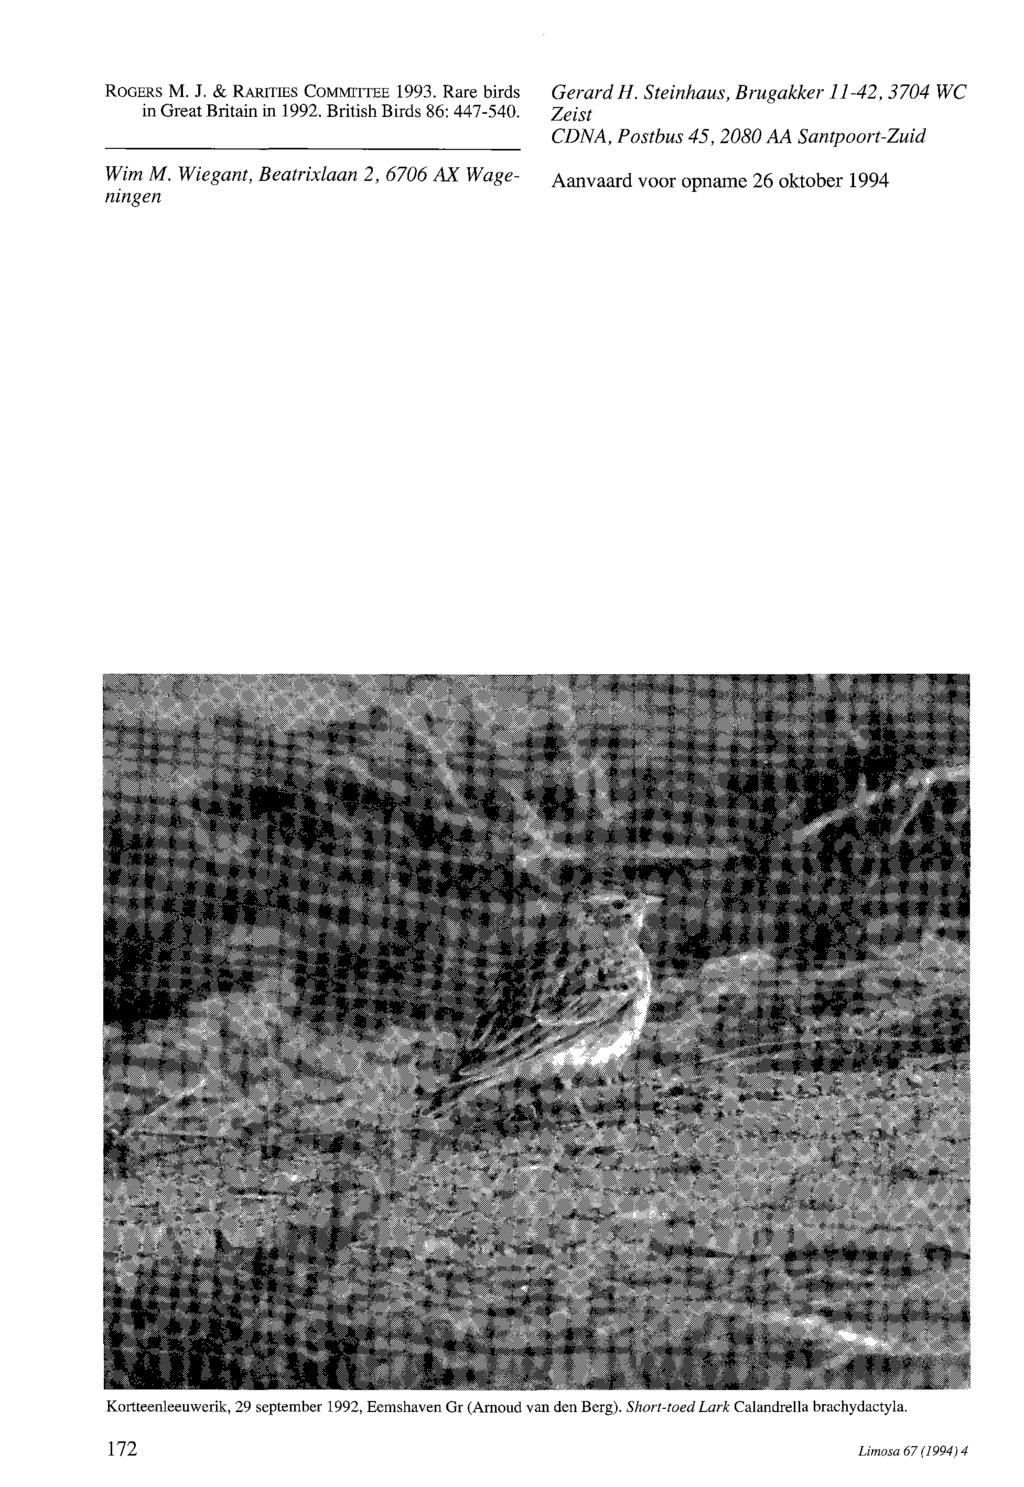 ROGERS M. J. & RARITIES COMMITTEE 1993. Rare birds in Great Britain in 1992. British Birds 86: 447-540. Wim M. Wiegant, Beatrixlaan 2,6706 AX Wageningen Gerard H.